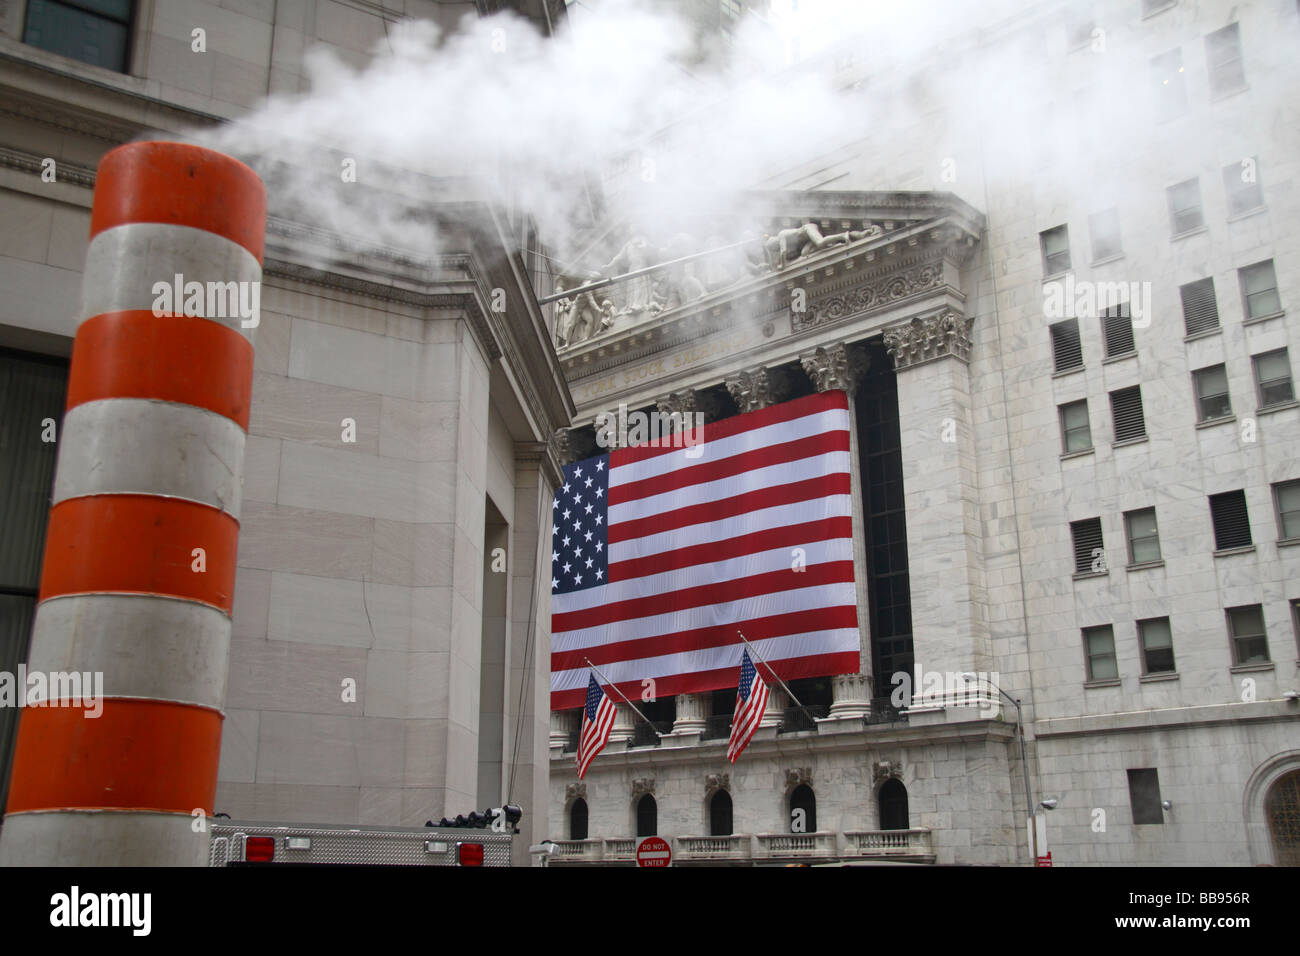 Dampf entweicht ein Dampfrohr an der Wall Street, neben der Star Spangled Banner Marterrad New York Stock Exchange. Stockfoto